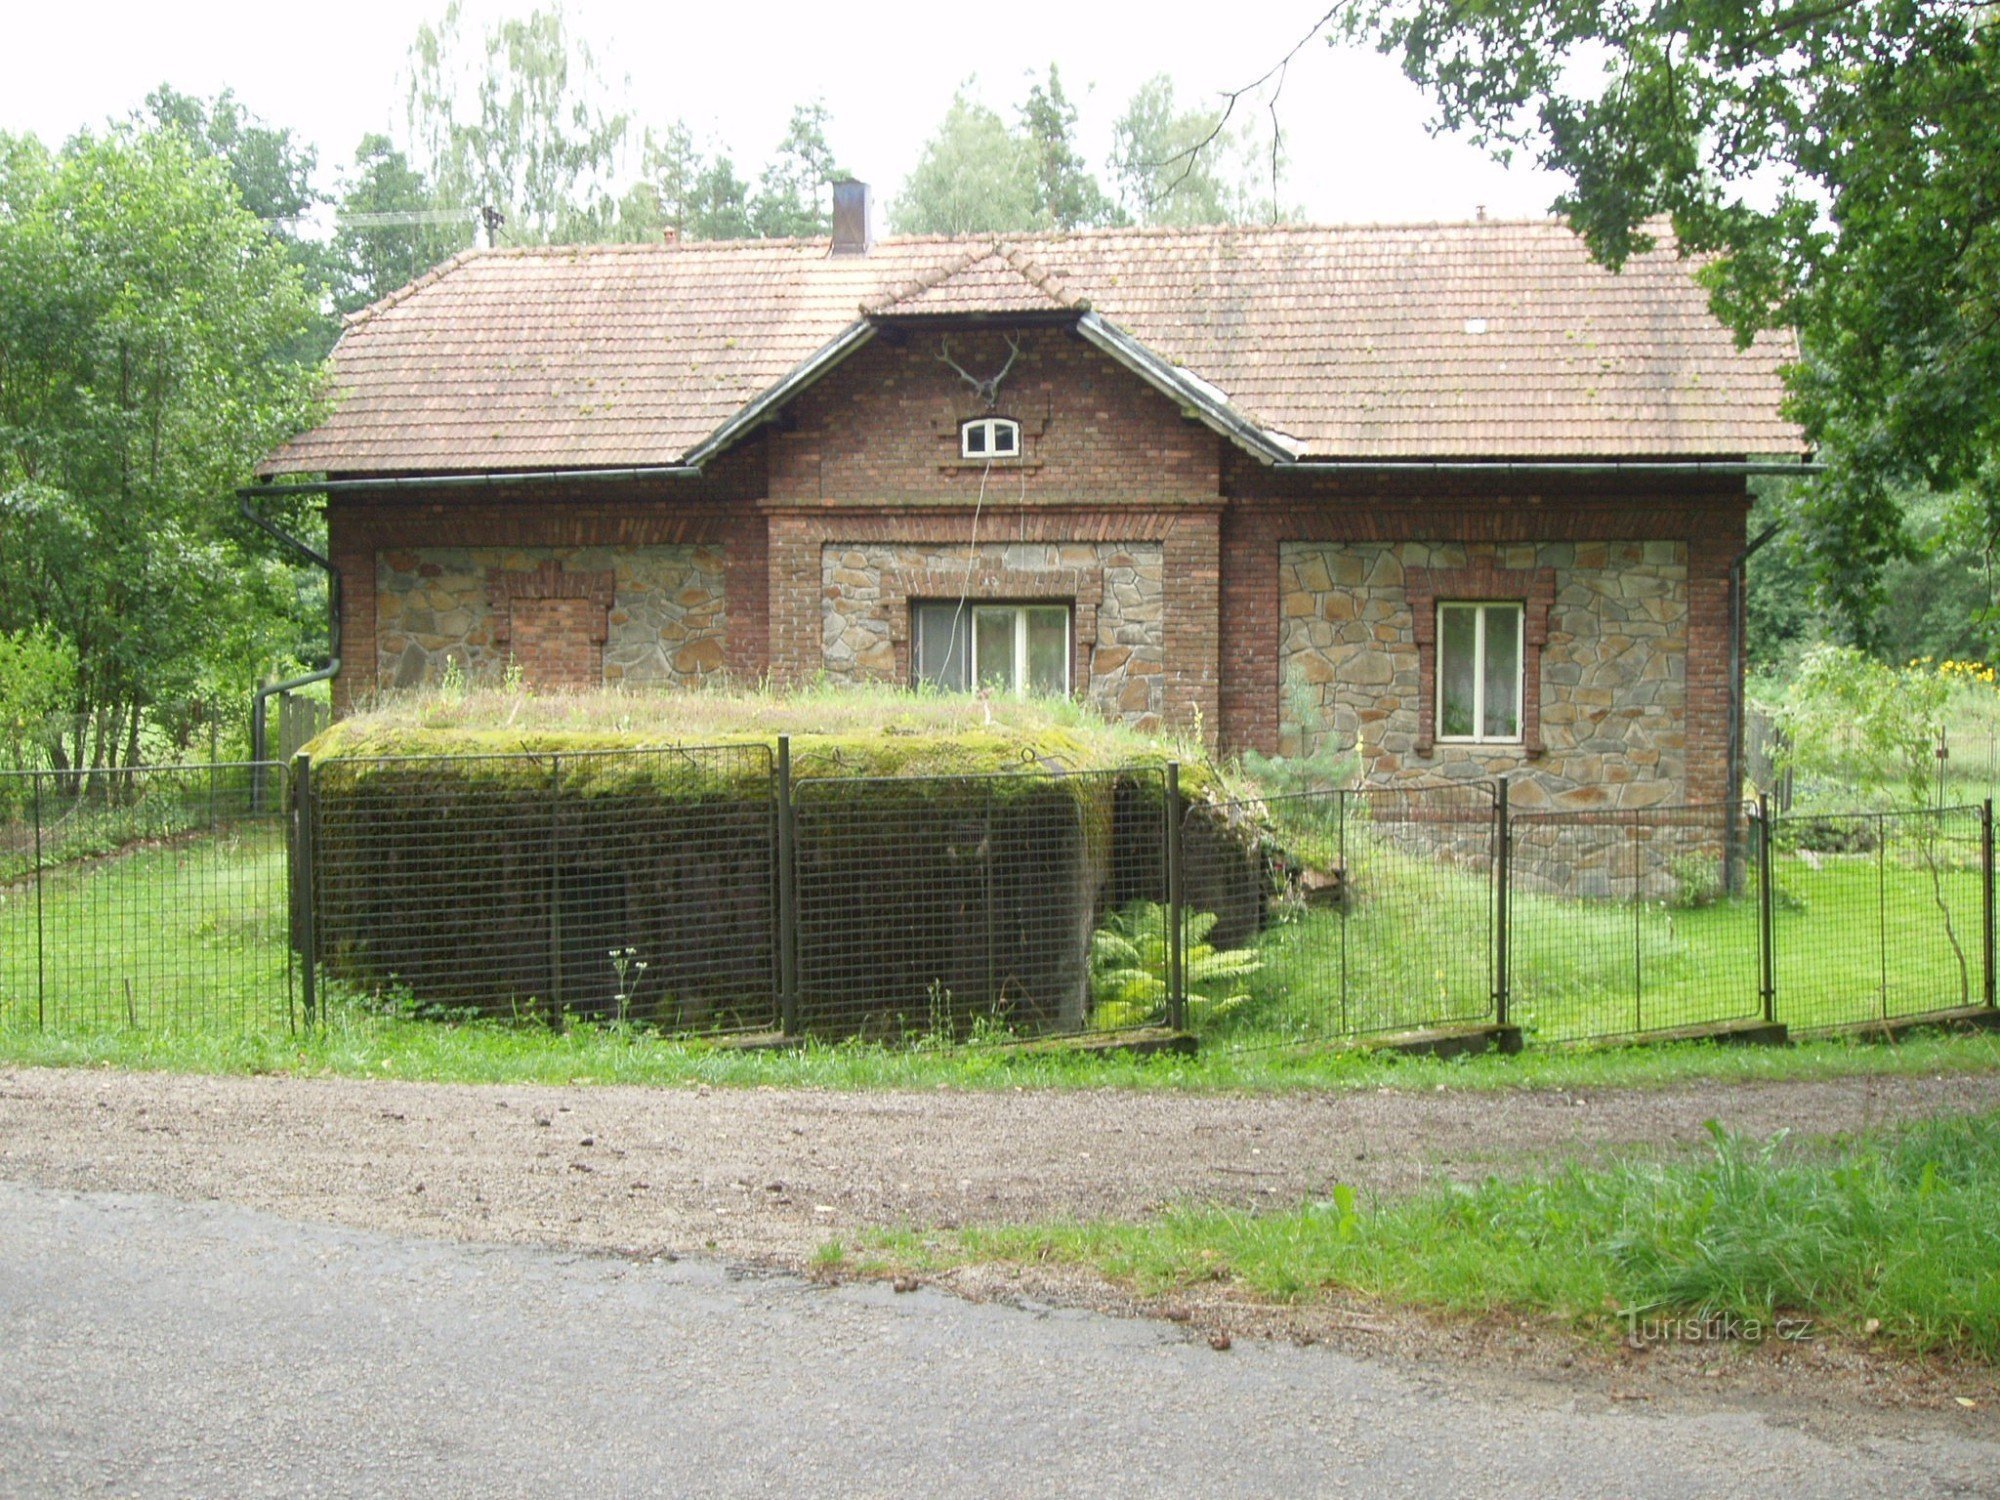 Fortificazione leggera "ŘOPÍK" nel giardino della riserva di caccia in località Purkrabí vicino a Chlum vicino a Třeboně